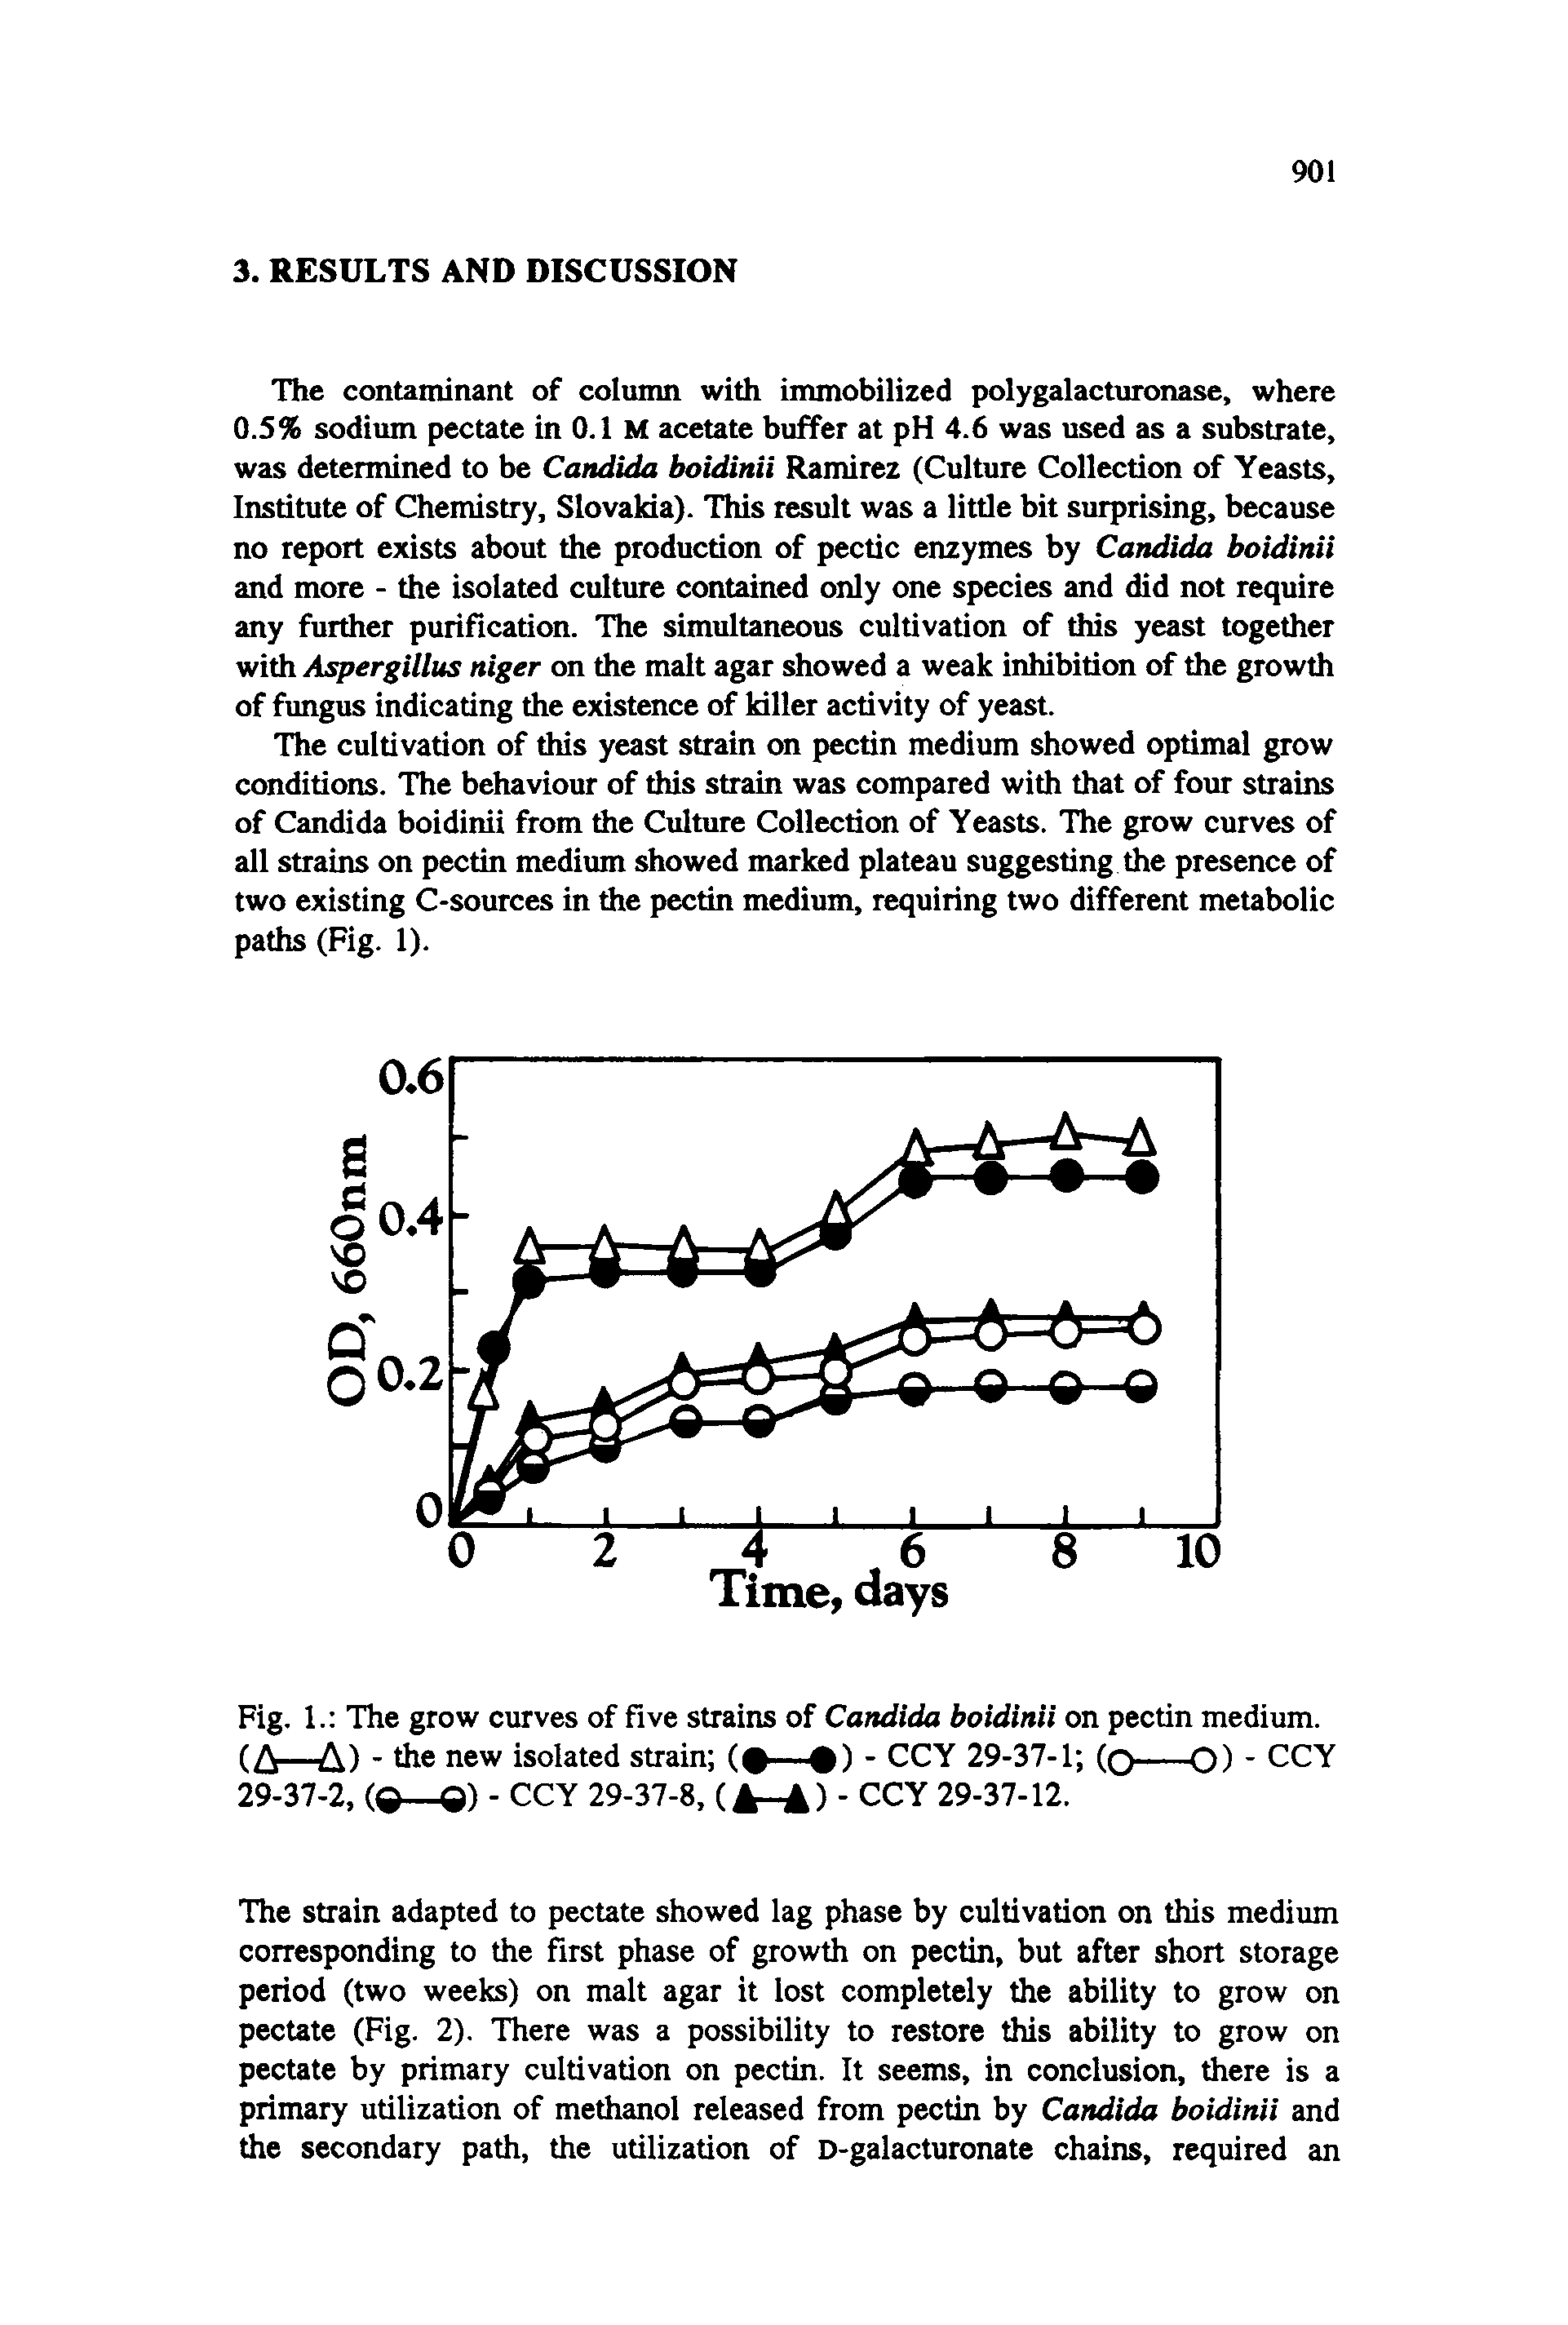 Fig. 1. The grow curves of five strains of Candida boidinii on pectin medium.